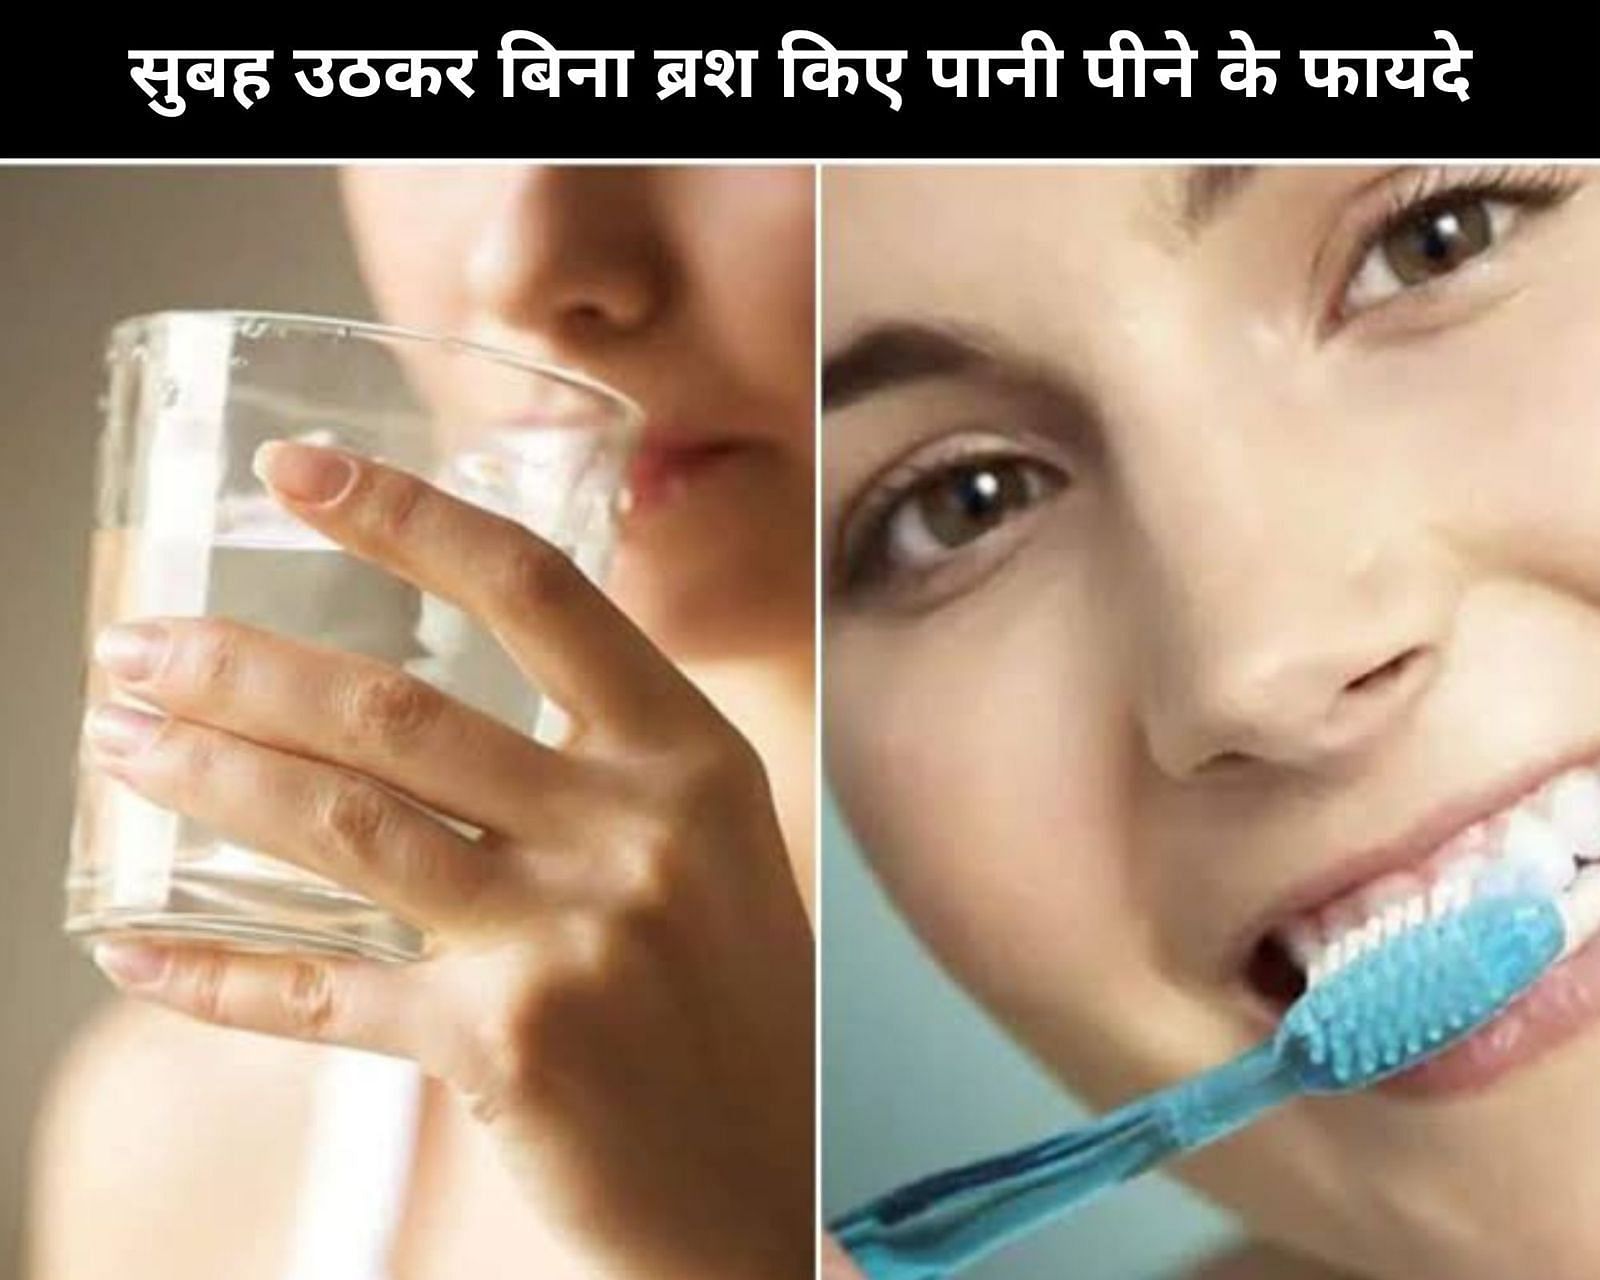 सुबह उठकर बिना ब्रश किए पानी पीने के फायदे (sportskeeda Hindi) 